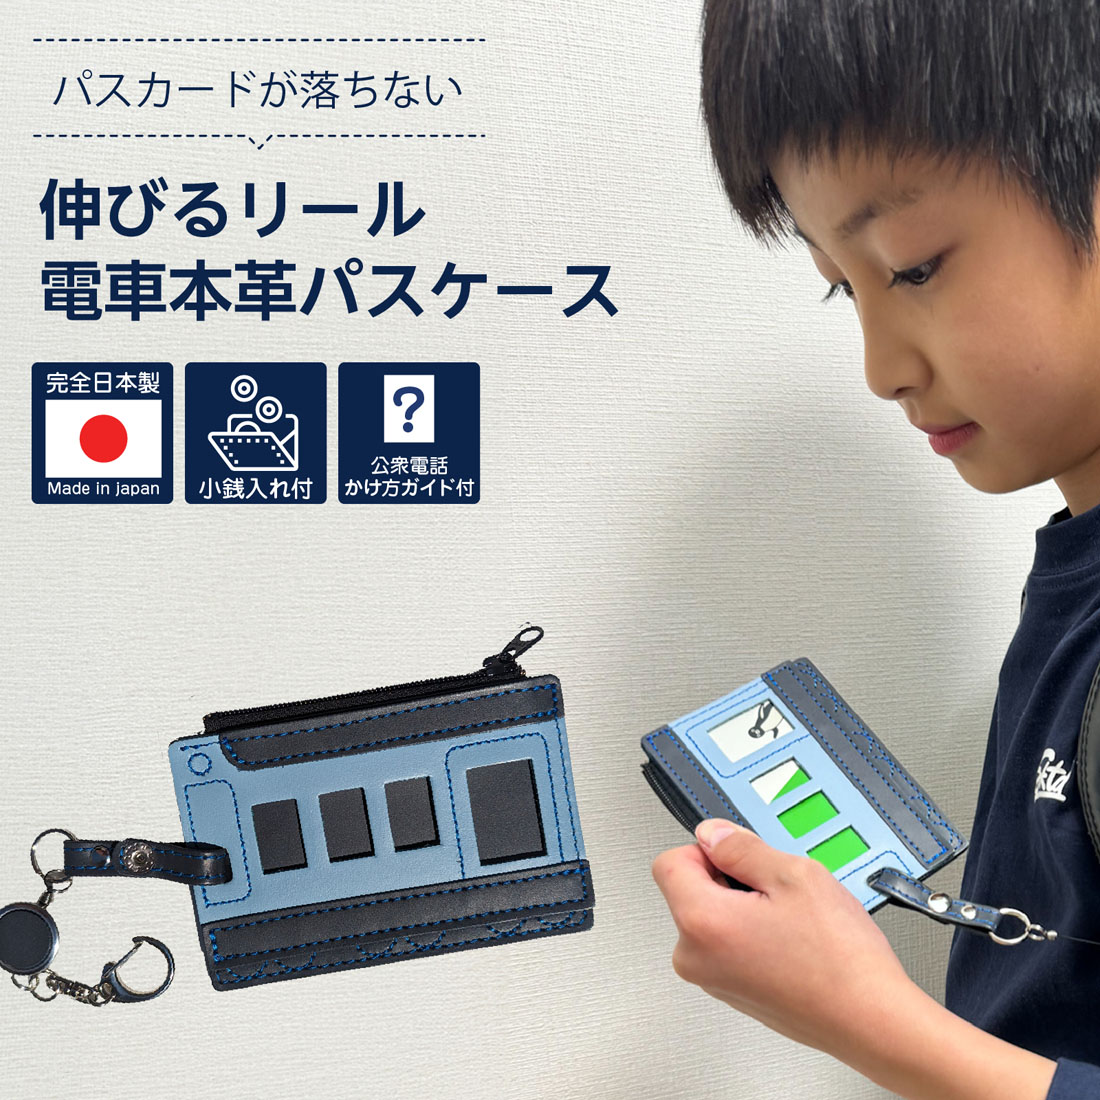 パスカードが落ちない 伸びるリール電車本革パスケース 非常時対応のコインケース＆公衆電話のかけ方ガイド付き 完全日本製 通学用 子供用 リール付き 定期入れ